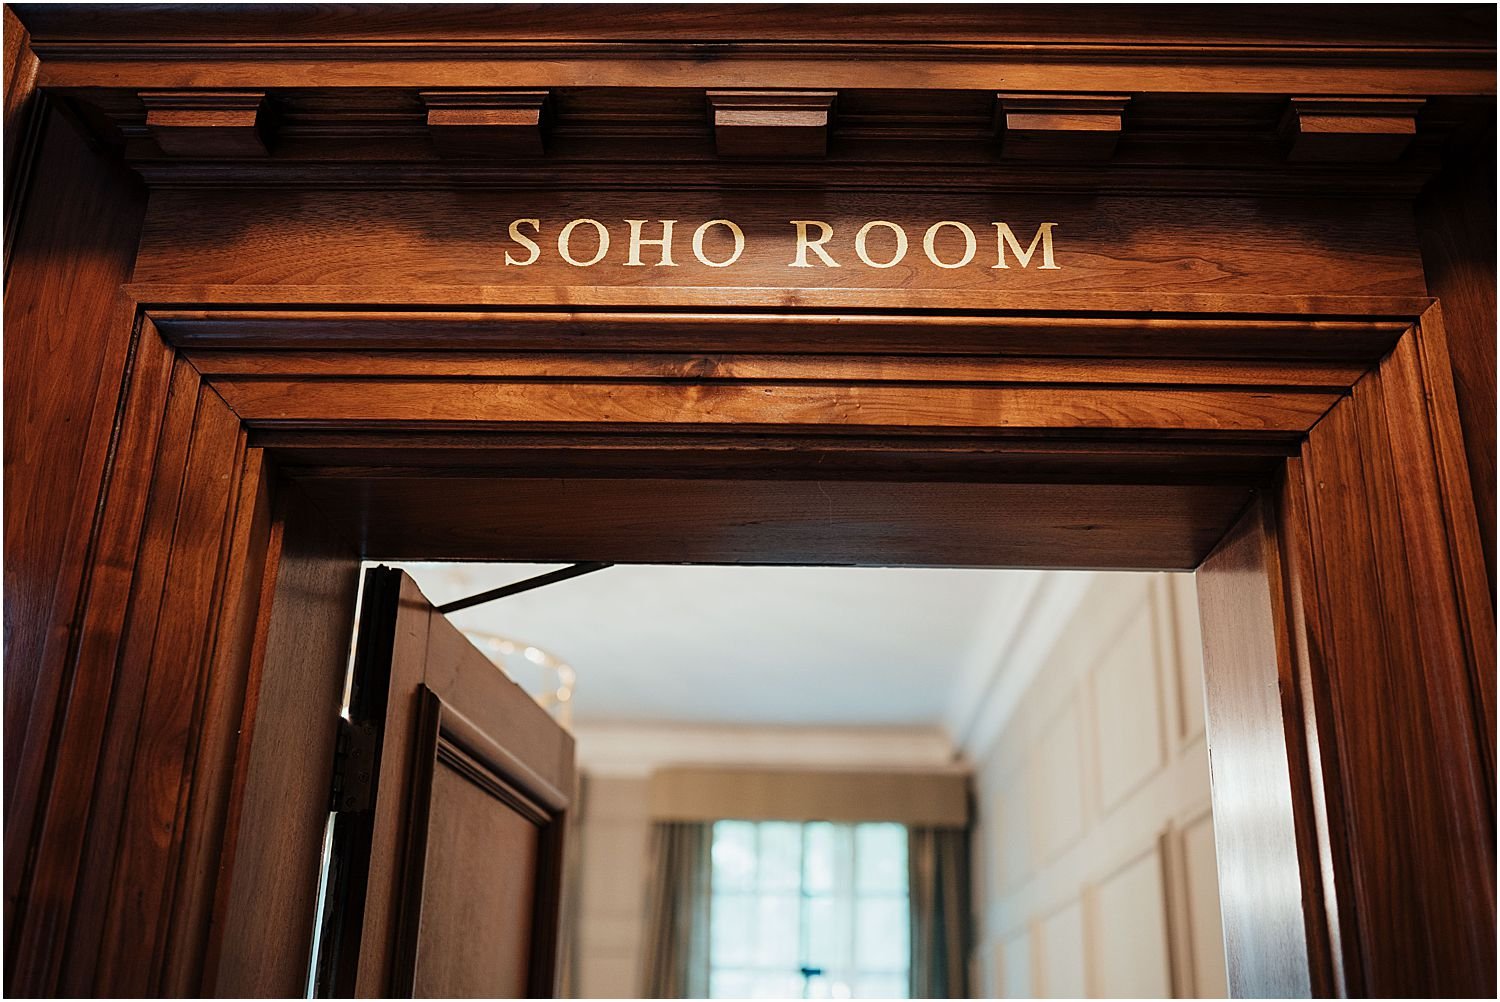 Soho Room at Old Marylebone Town Hall 